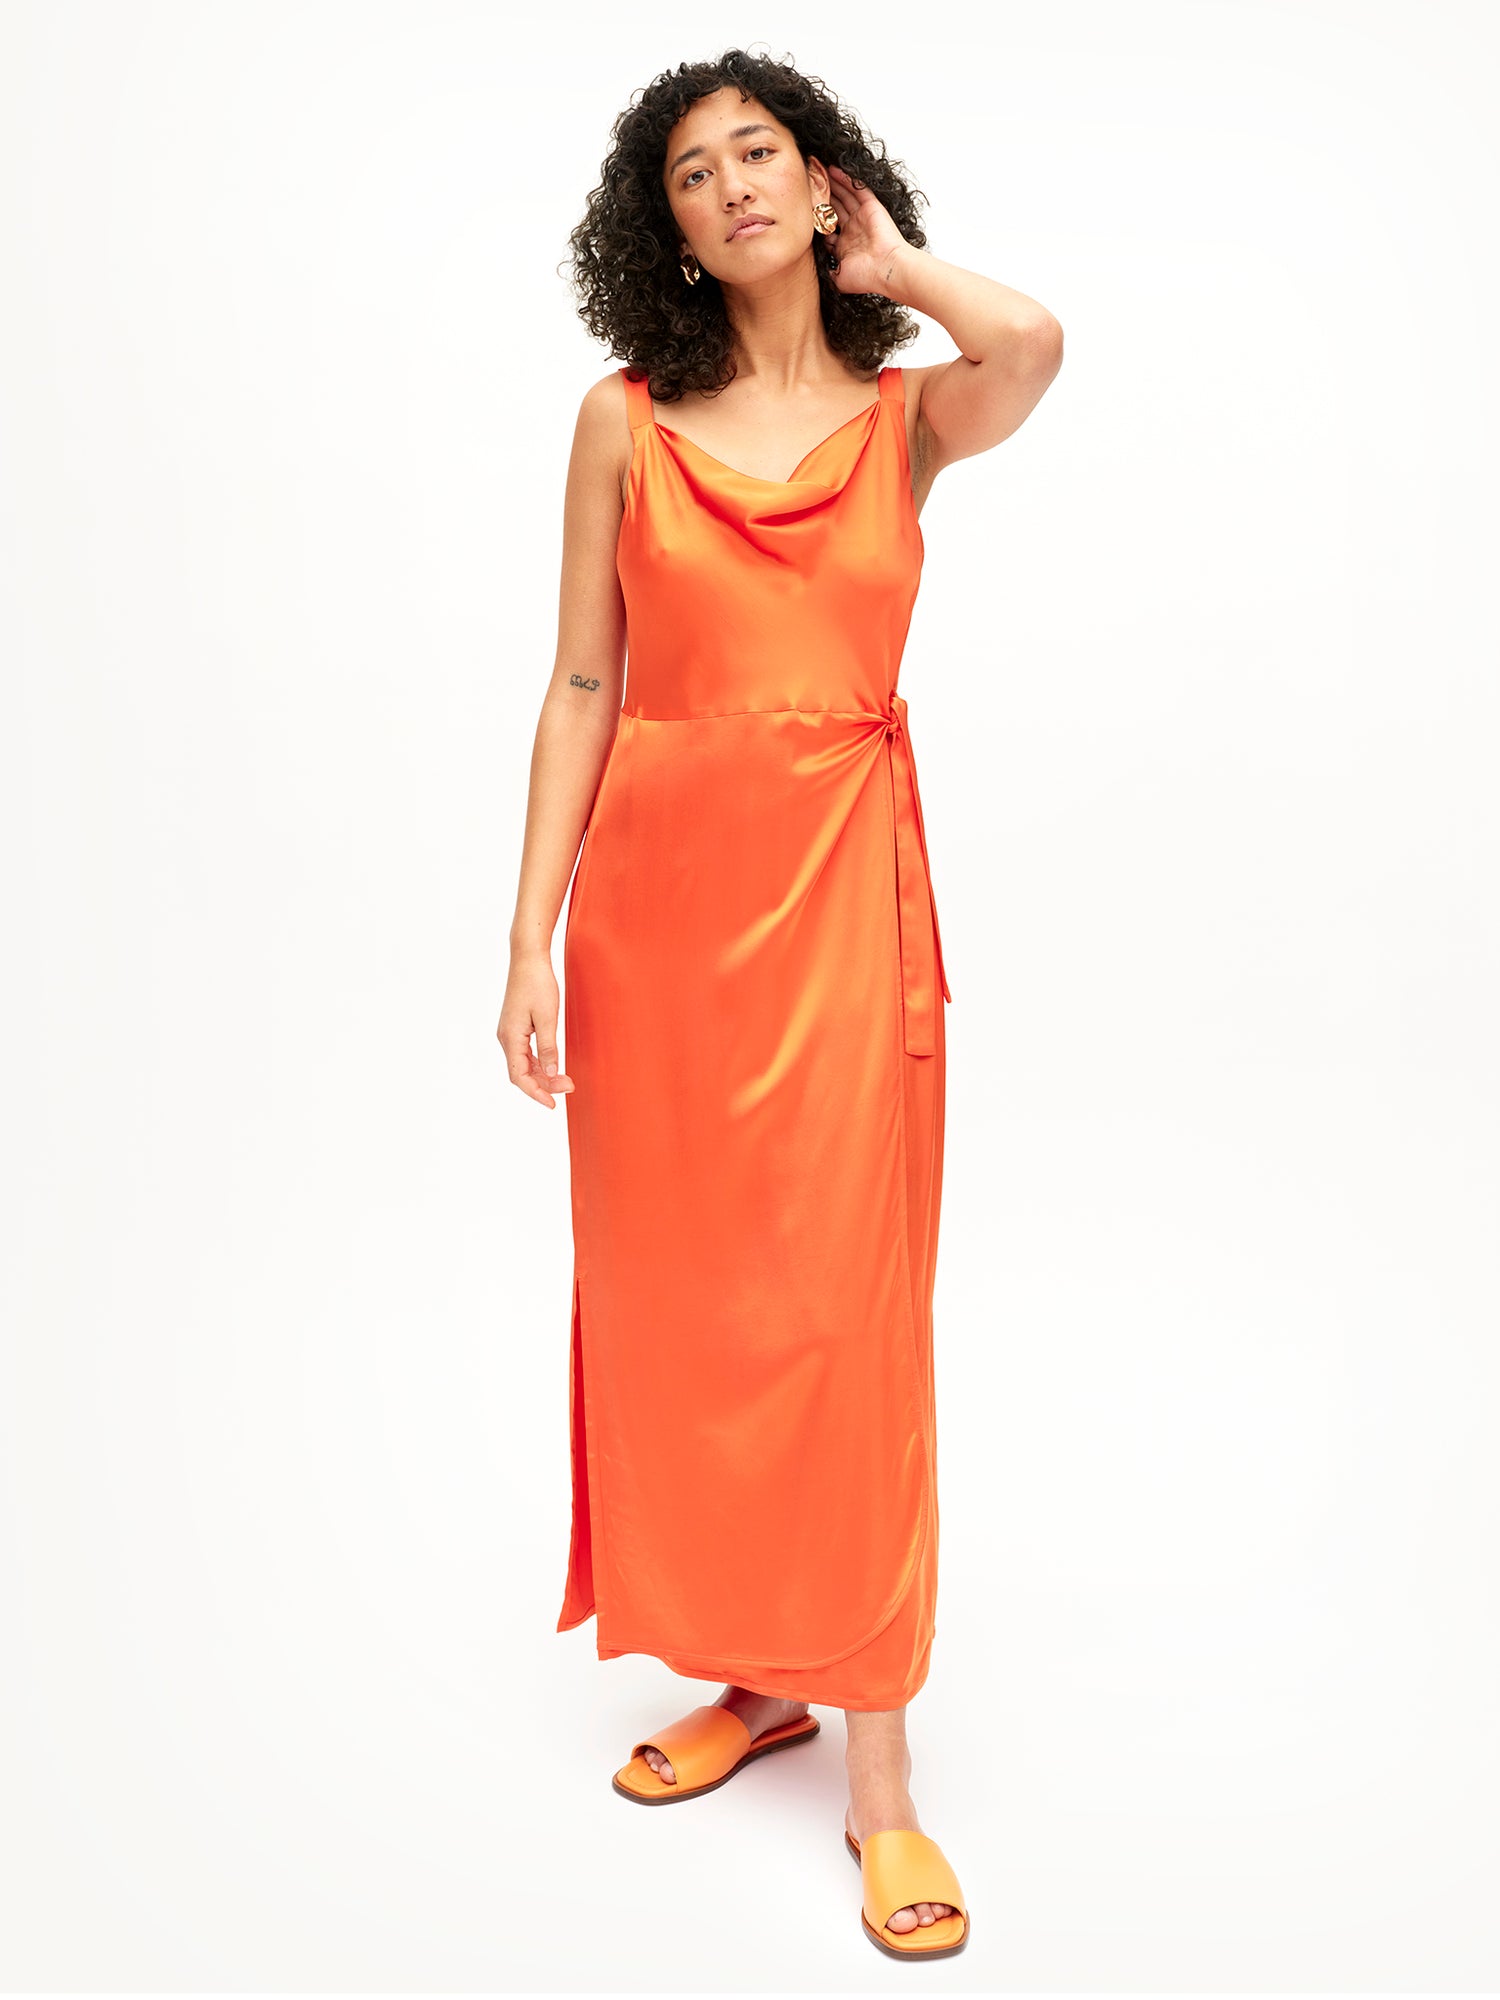 Uhana - Otava Dress, Vibrant Orange